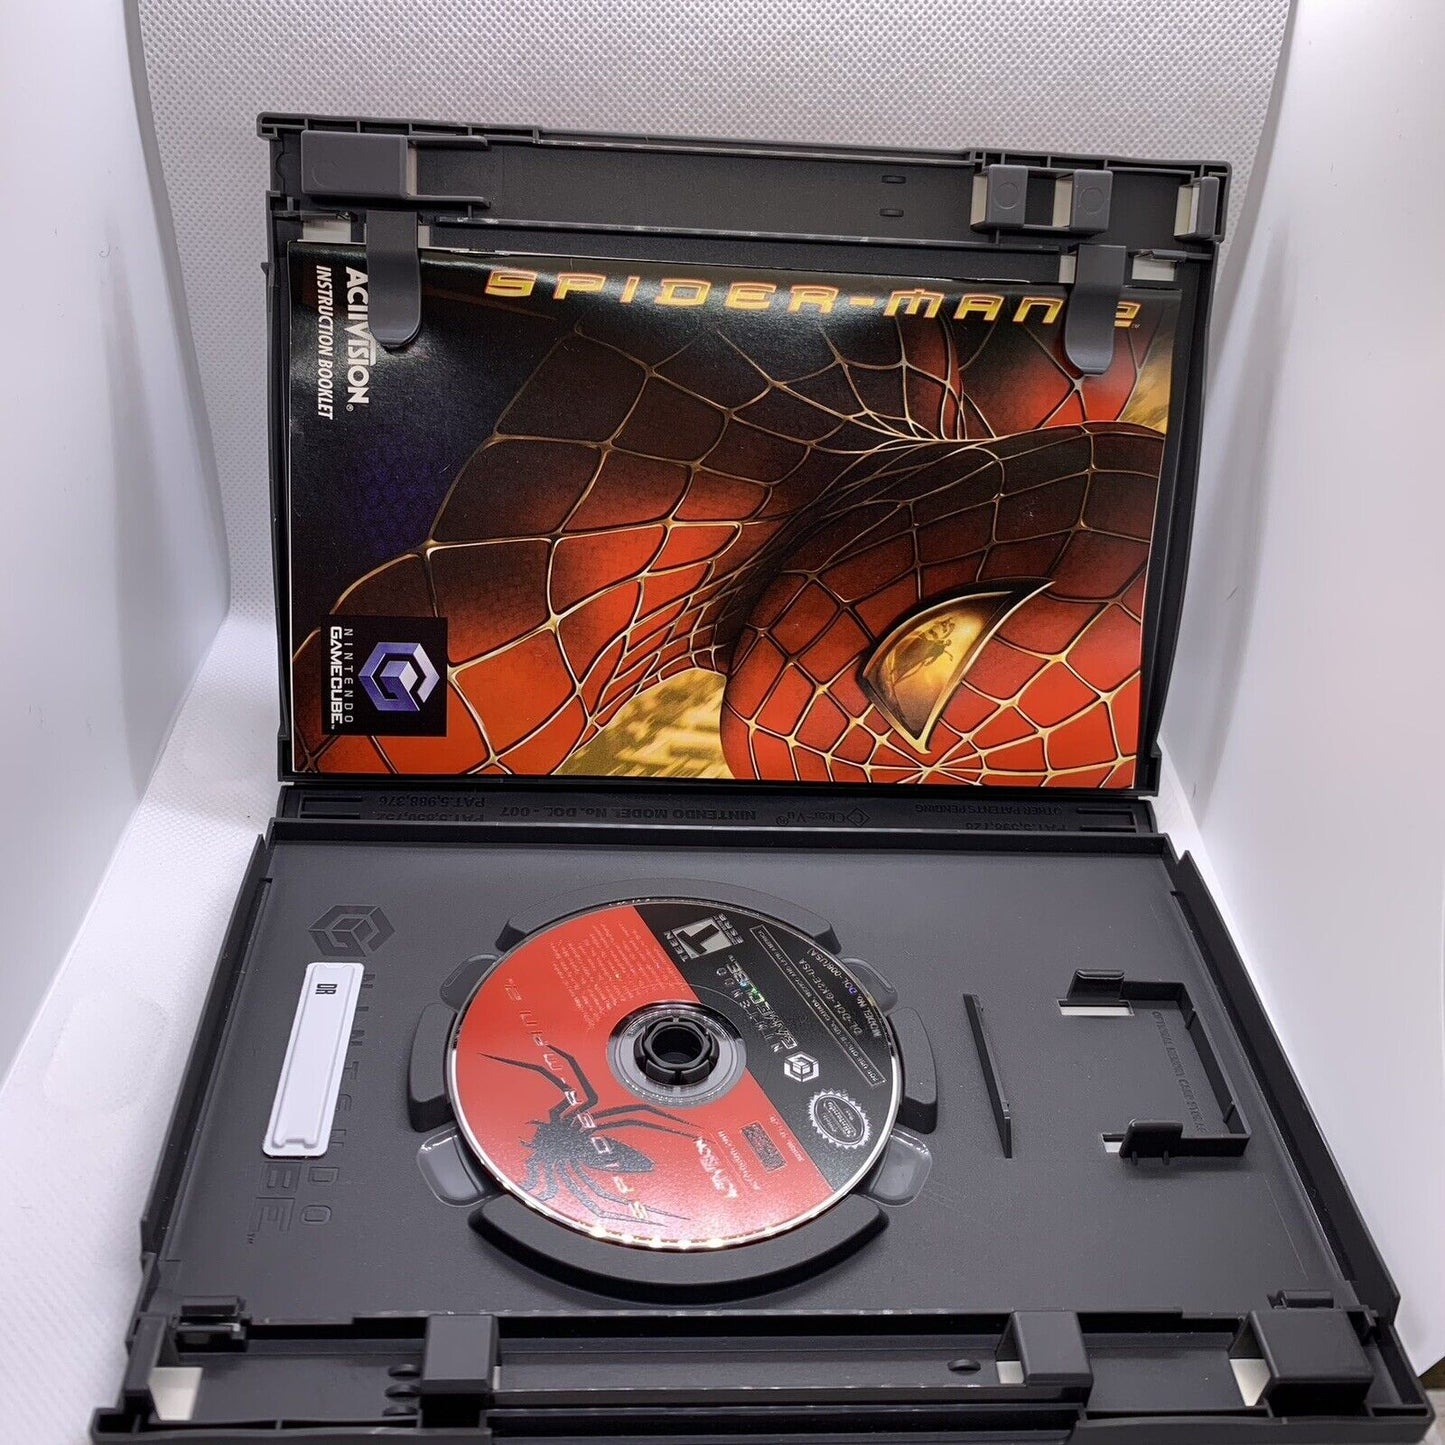 Spider-Man 2 (Nintendo GameCube, 2004)